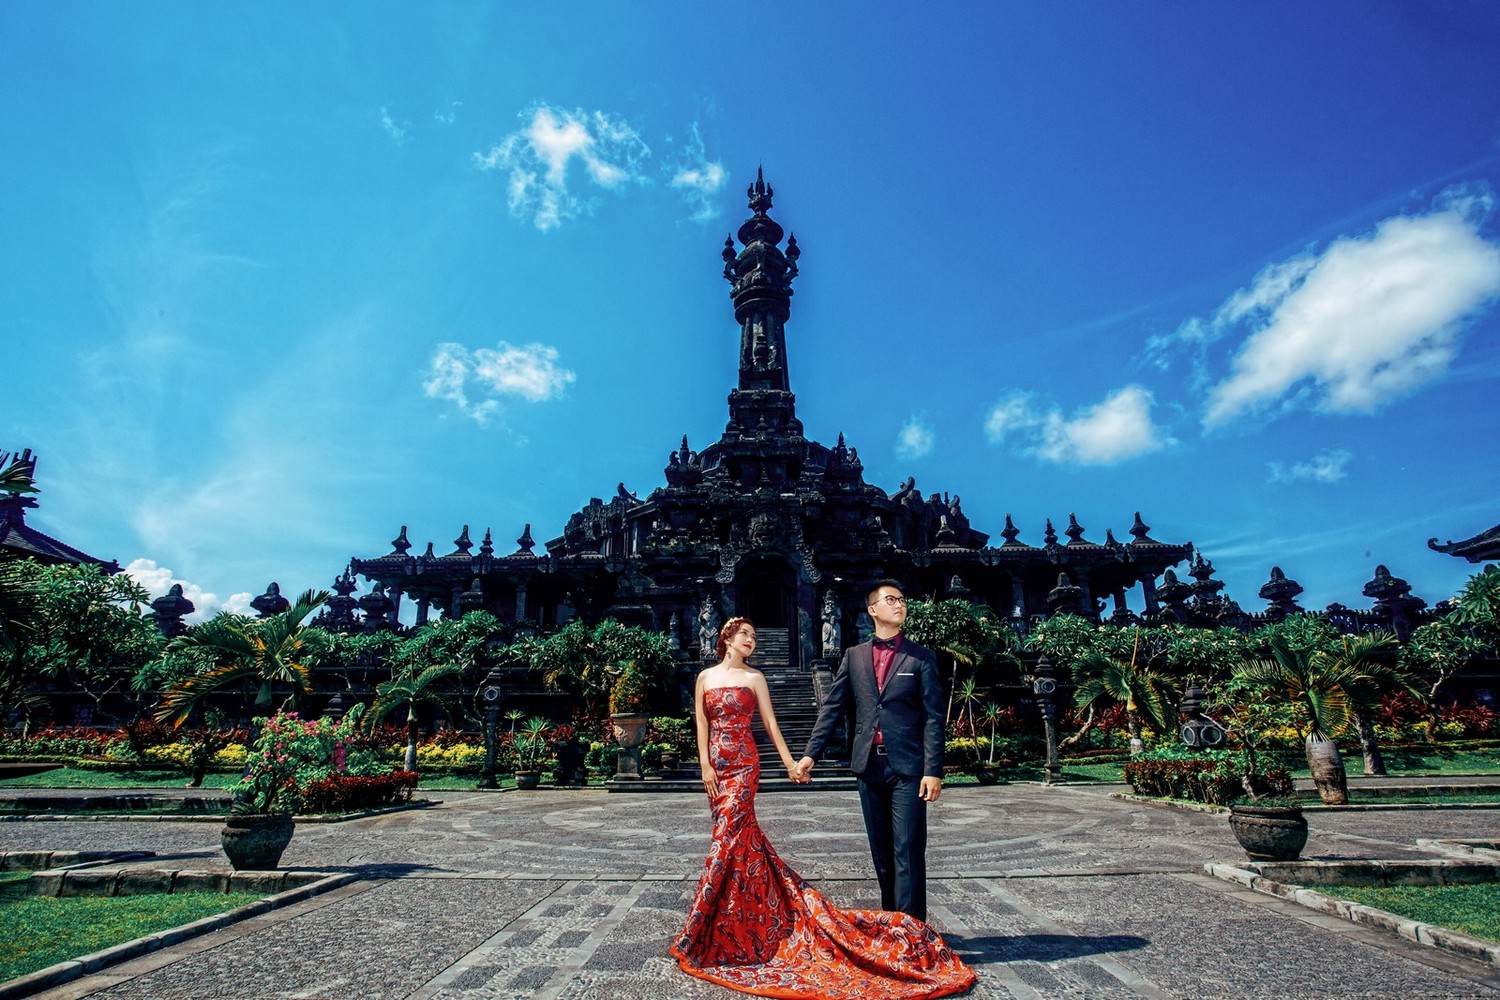 印尼拍婚紗,巴厘島婚紗照,印尼海外婚紗,巴厘島婚紗,旅拍婚紗,出國拍婚紗